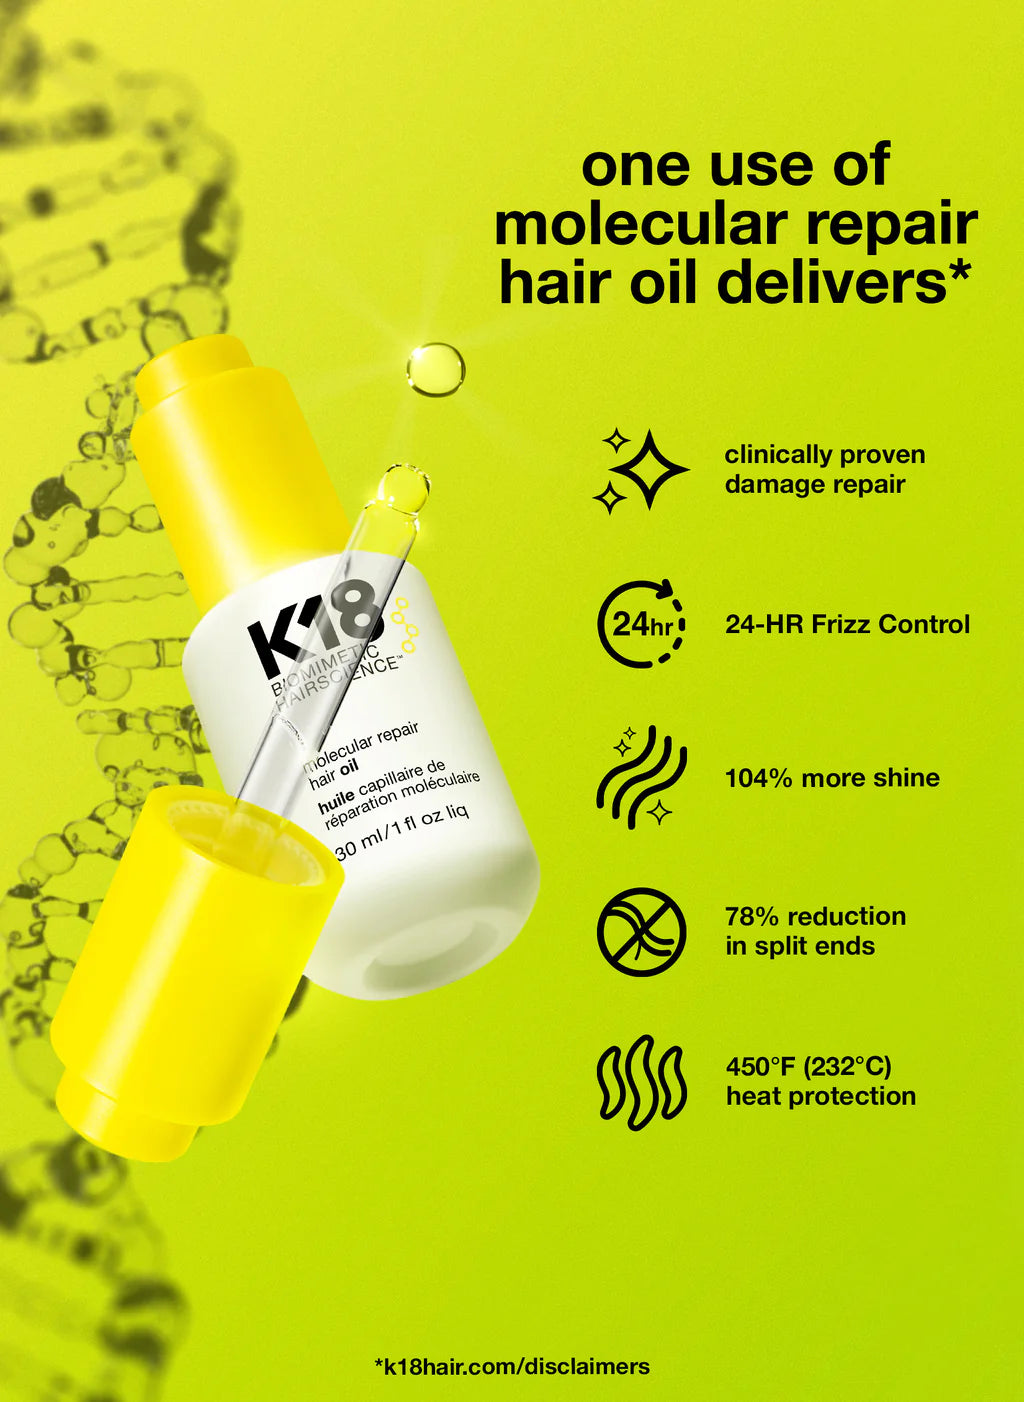 K18 Molecular Repair Hair Oil Features